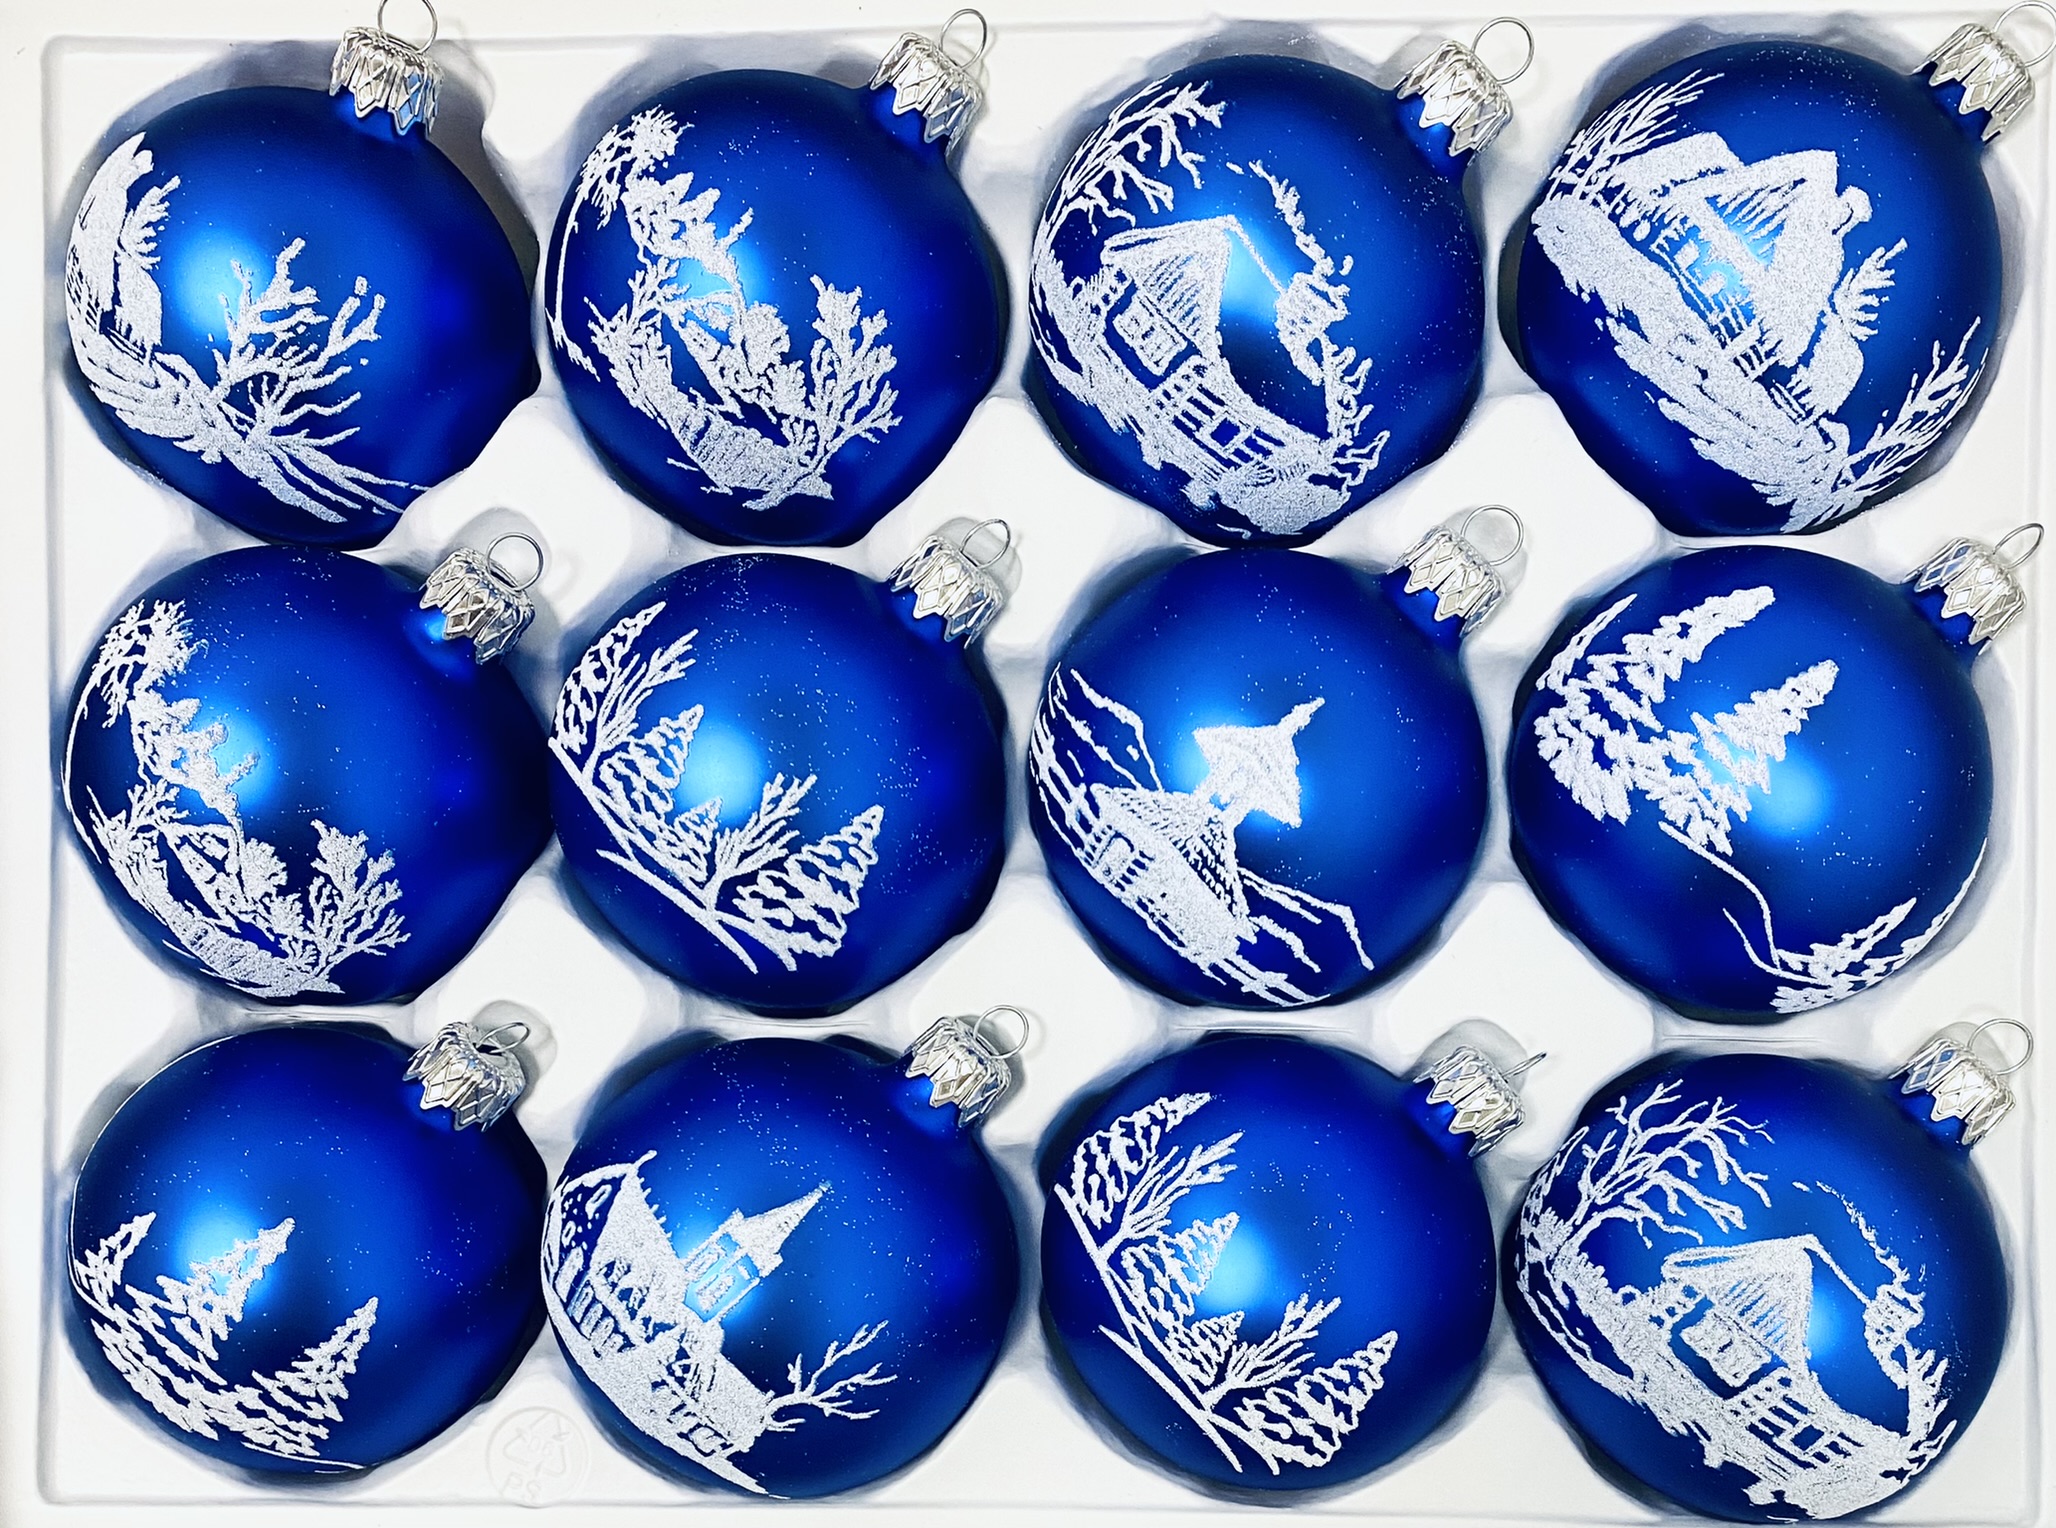 Irisa Vánoční skleněná sada MODRÁ LHOTA modré koule s dekorem vesnička 7 cm, SET 12 ks Balení: 12ks, Barva: modrá, Velikost: 7 cm